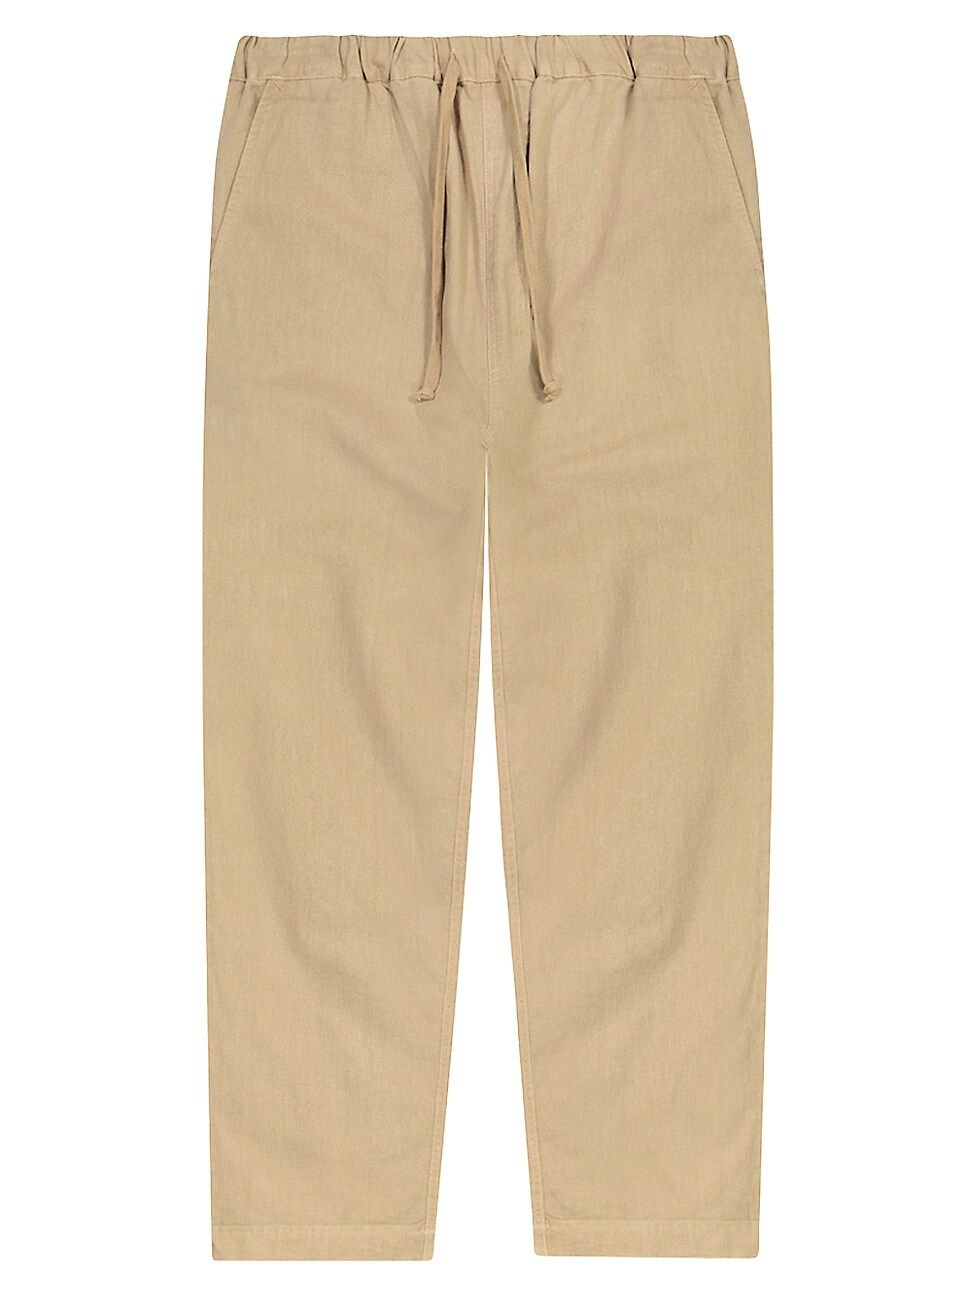 Men's Essential Linen Pants - Incense - Size Large | Saks Fifth Avenue